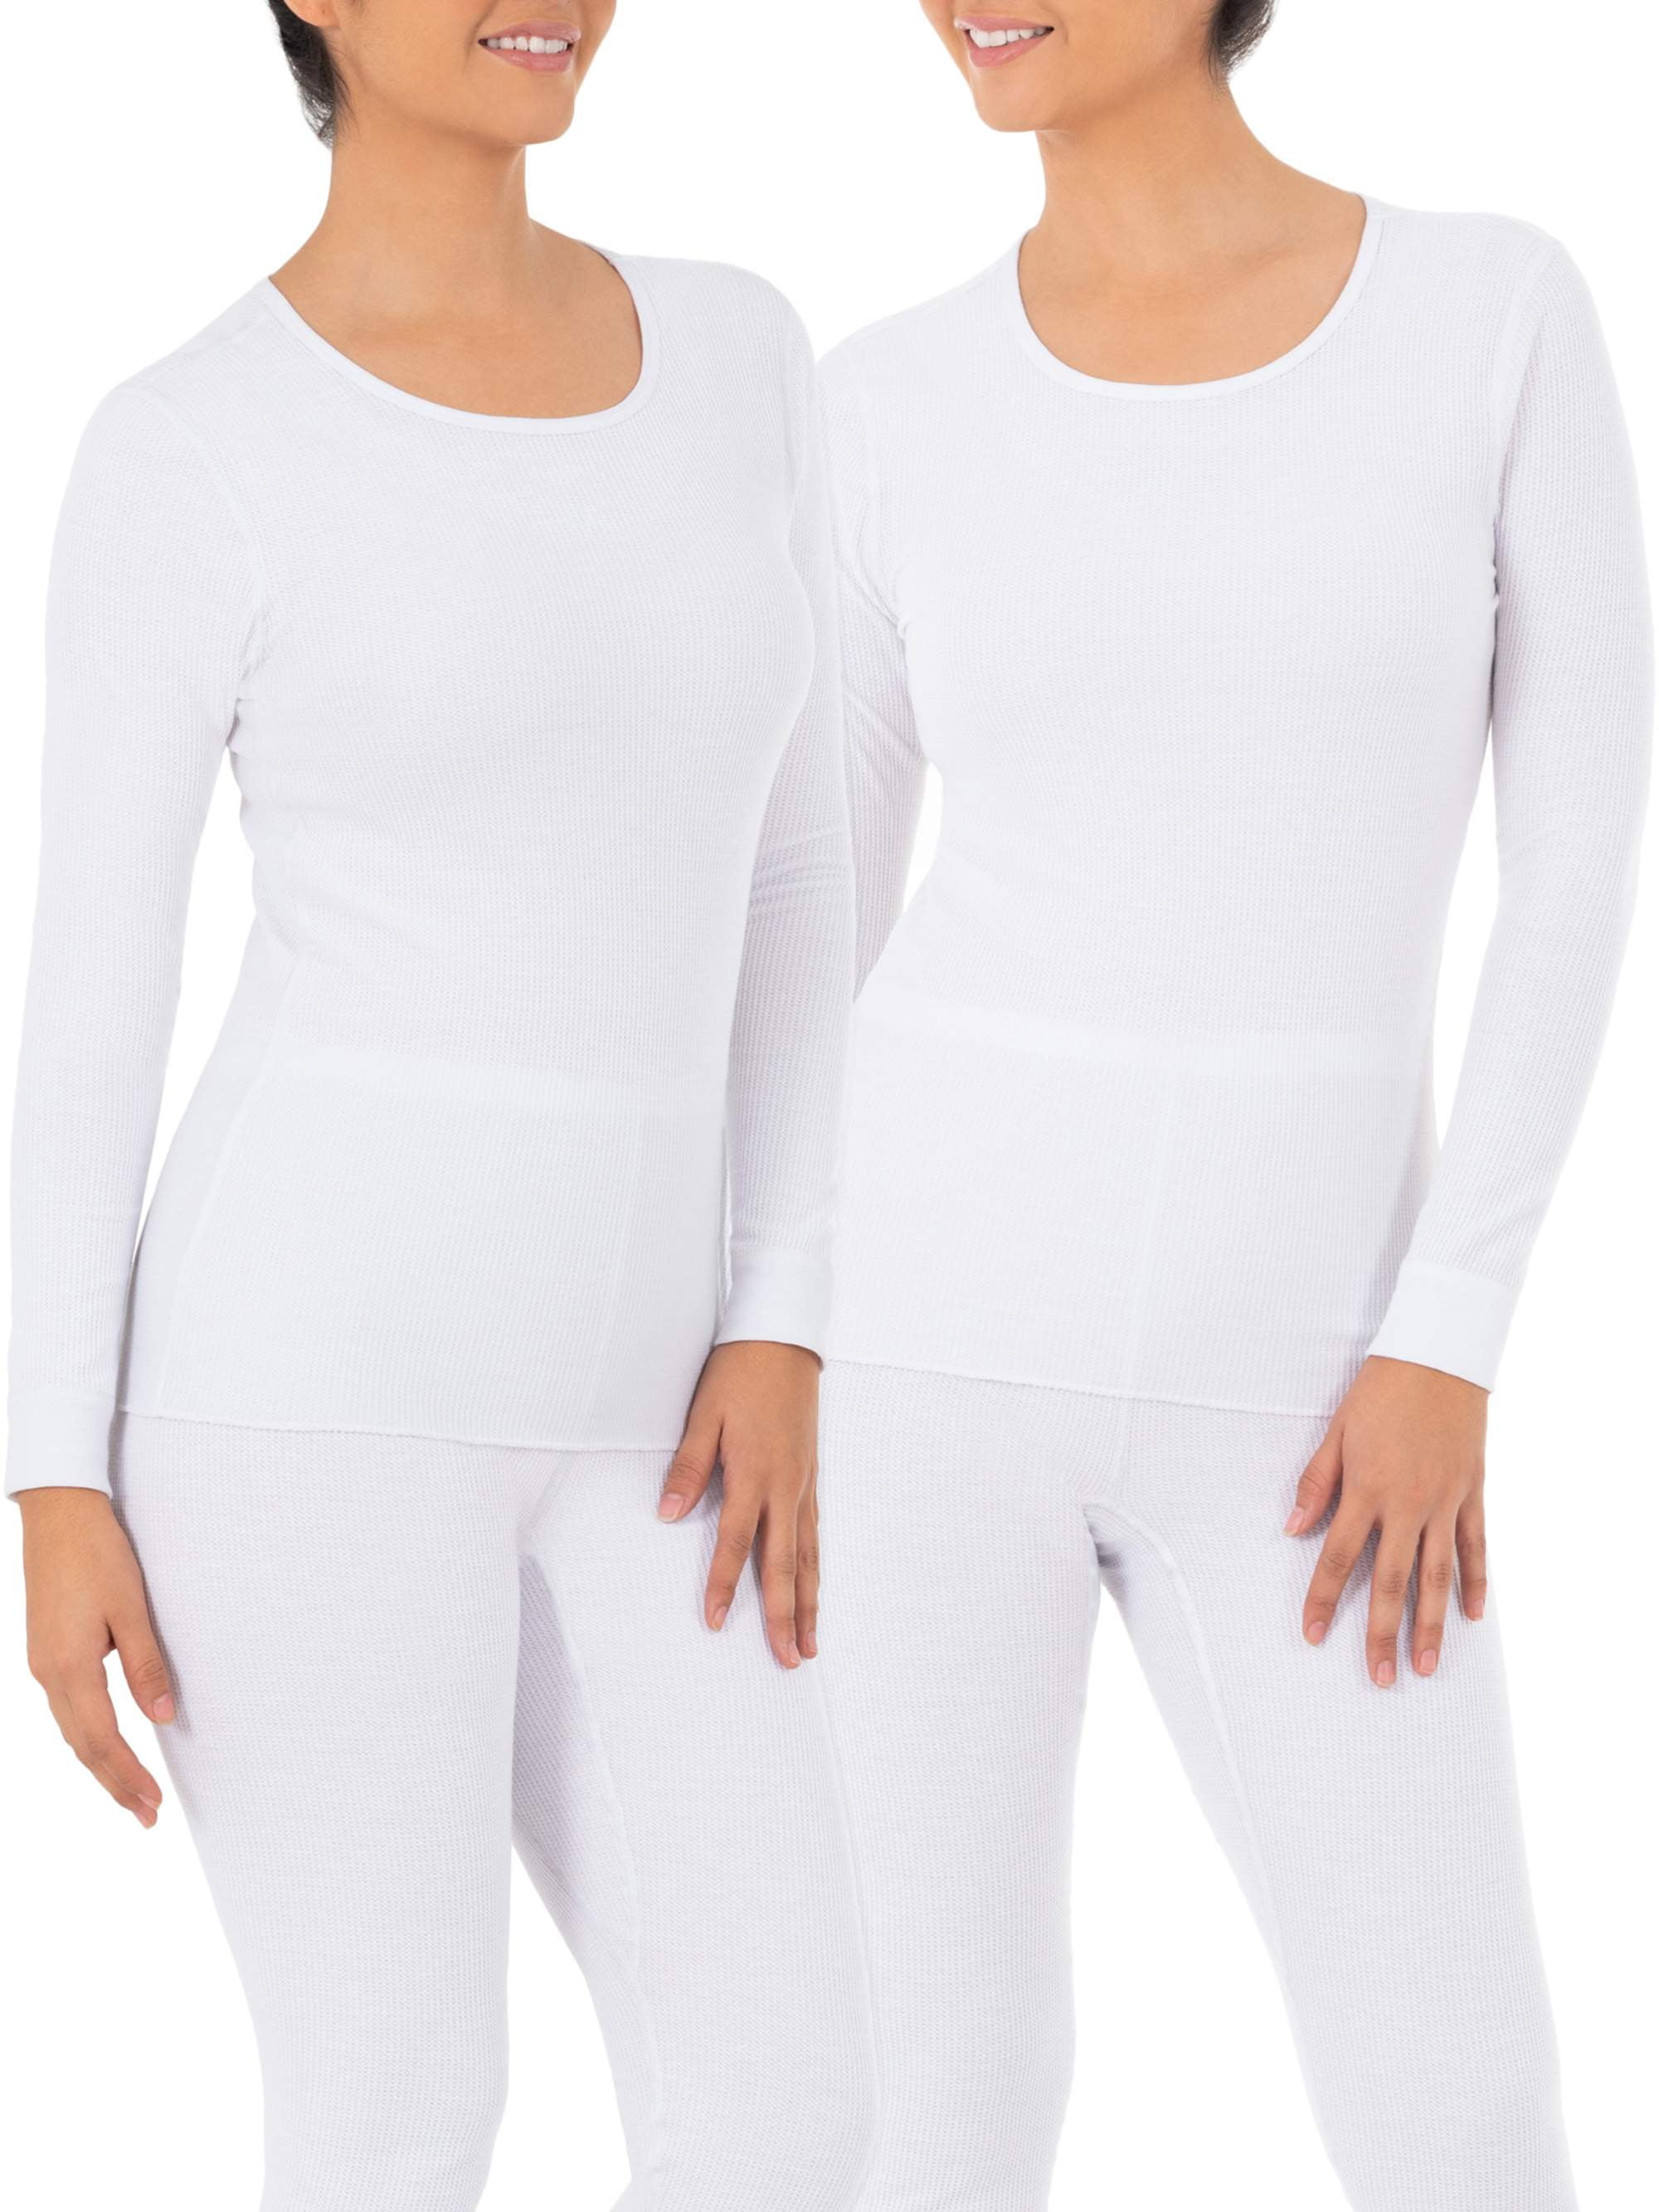 2019 Winter Women Thermal Underwear Plus Velvet Warm Thermol Underwear Hot-Dry Thermal